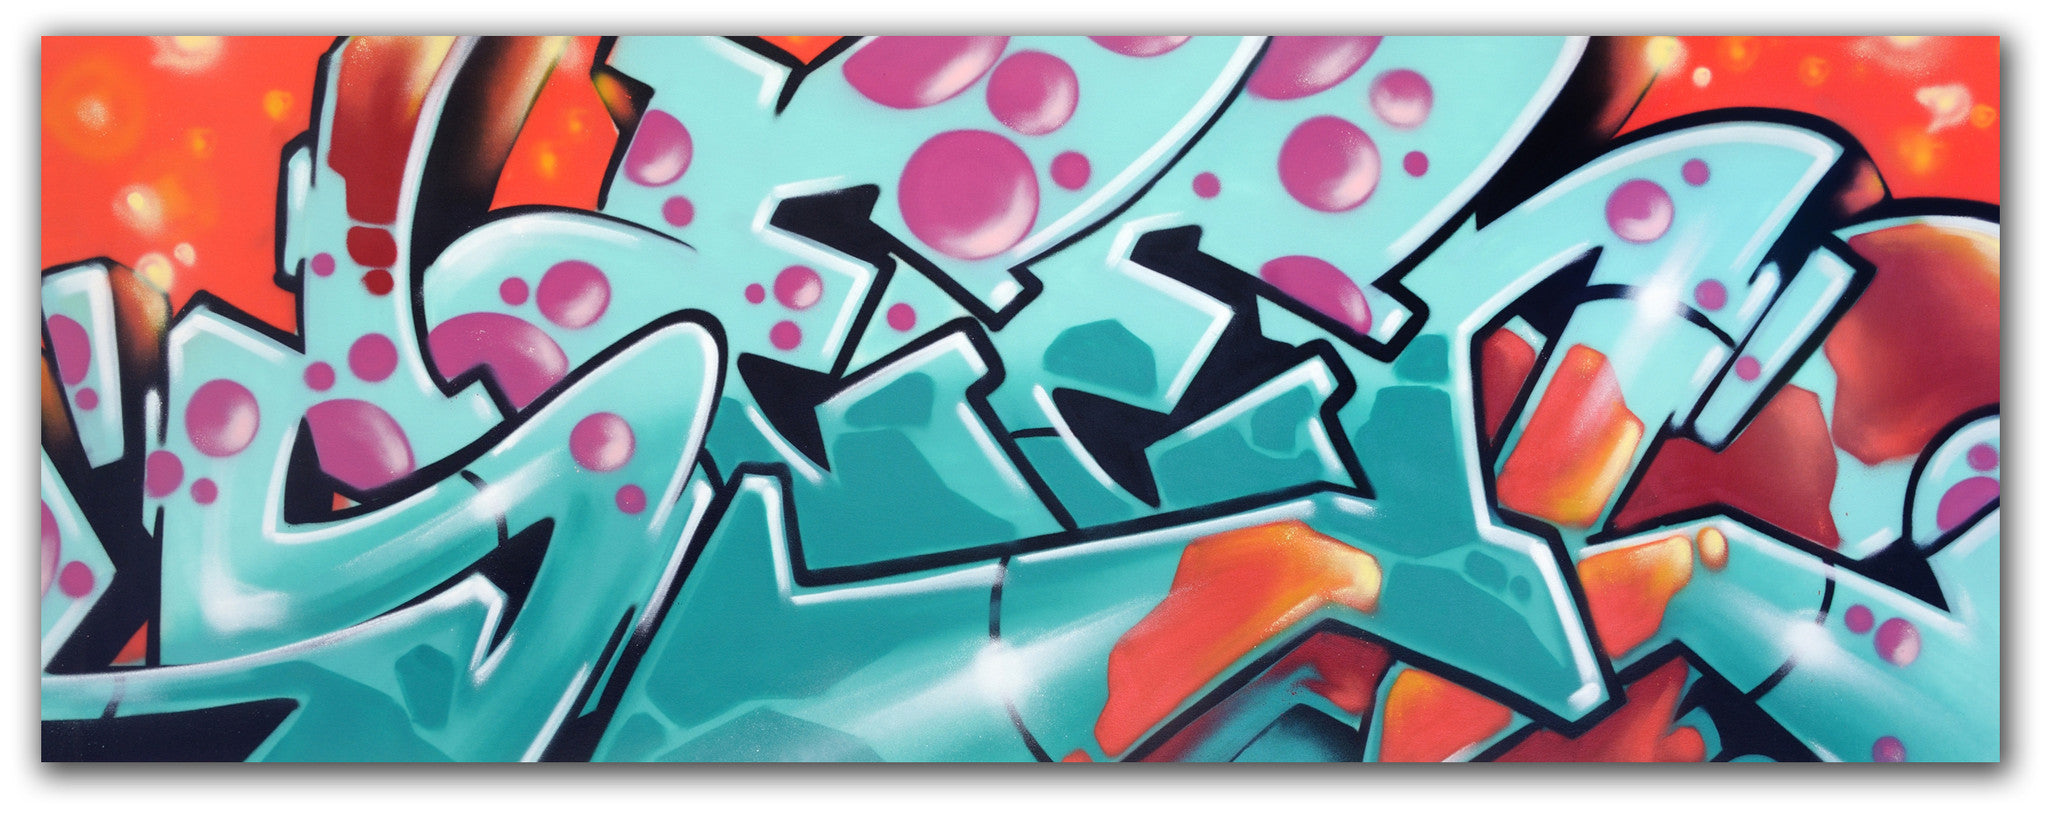 GRAFFITI ARTIST SEEN - "SEEN Wildstyle" Aerosol on Canvas ...